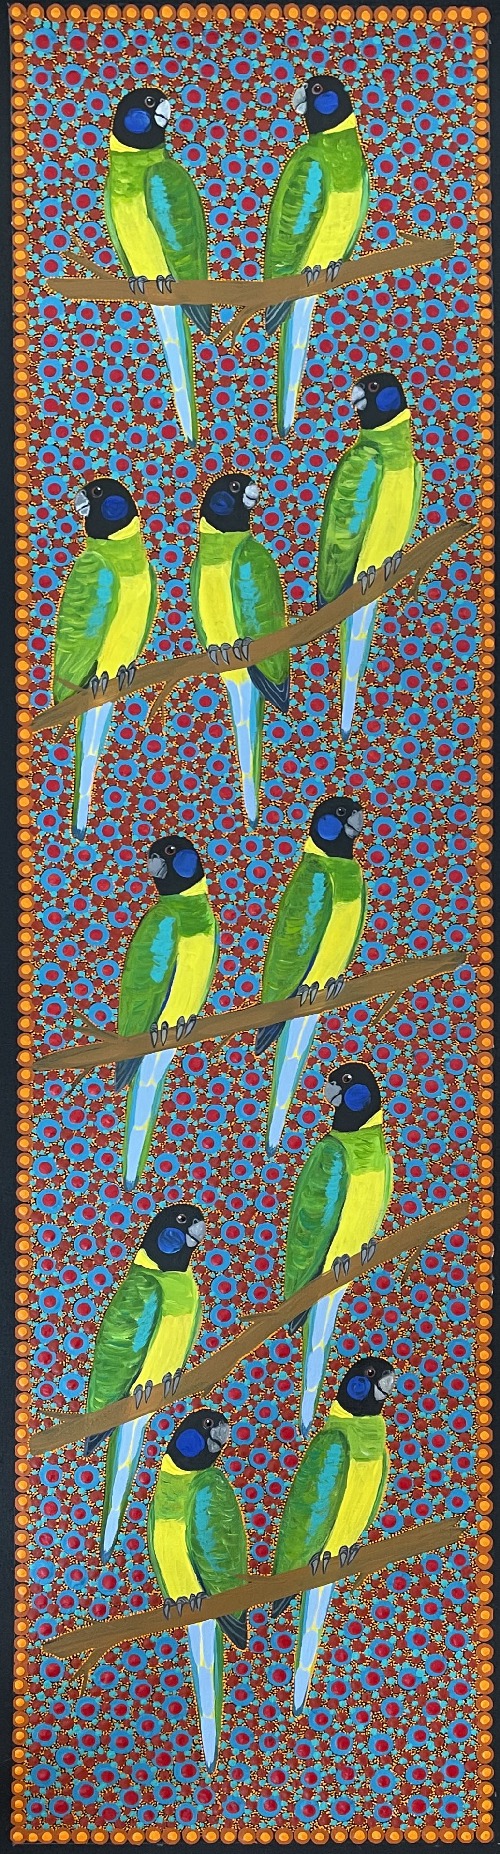 Ring Neck Parrots - KBZG0680